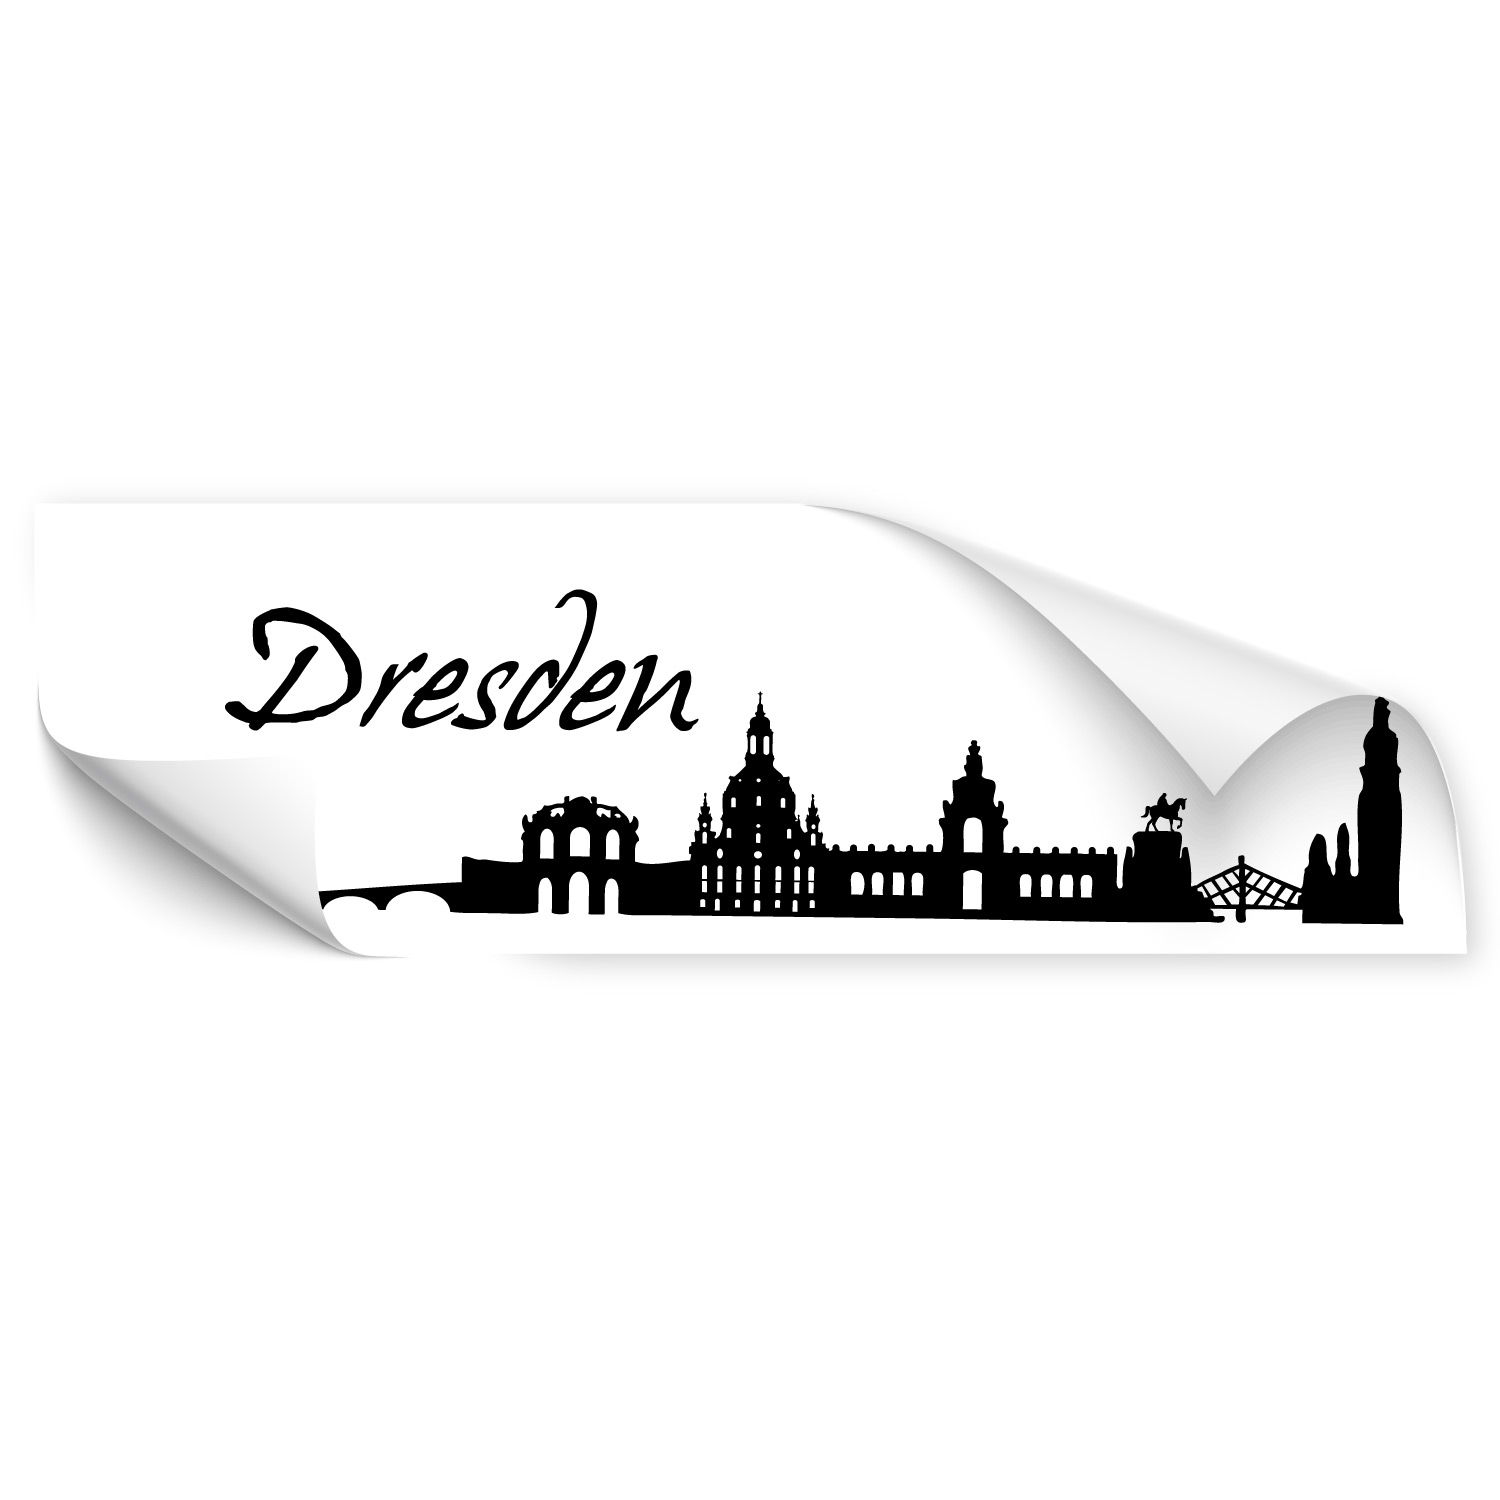 Dresden von Klebe-X jetzt Online bestellen!